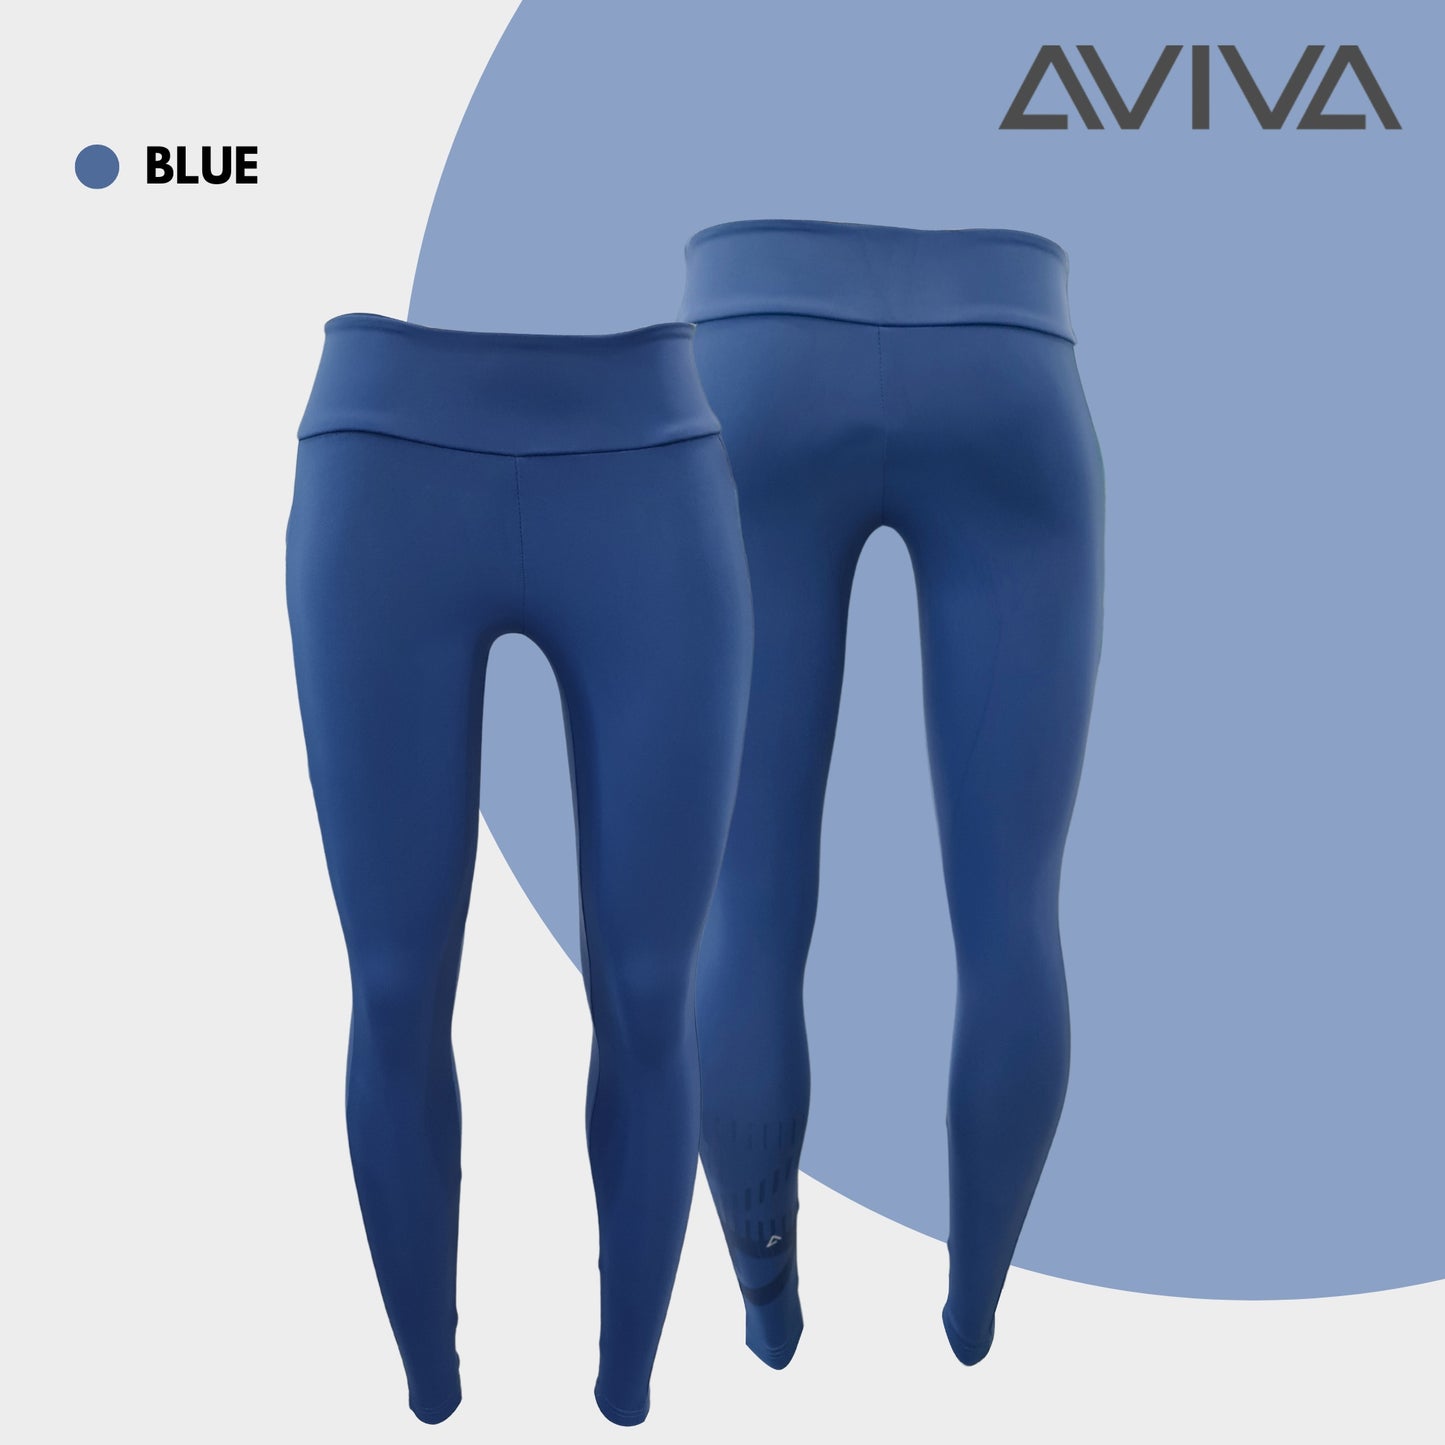 AVIVA Active Sportwear Long Leggings with Pocket (80-4203)